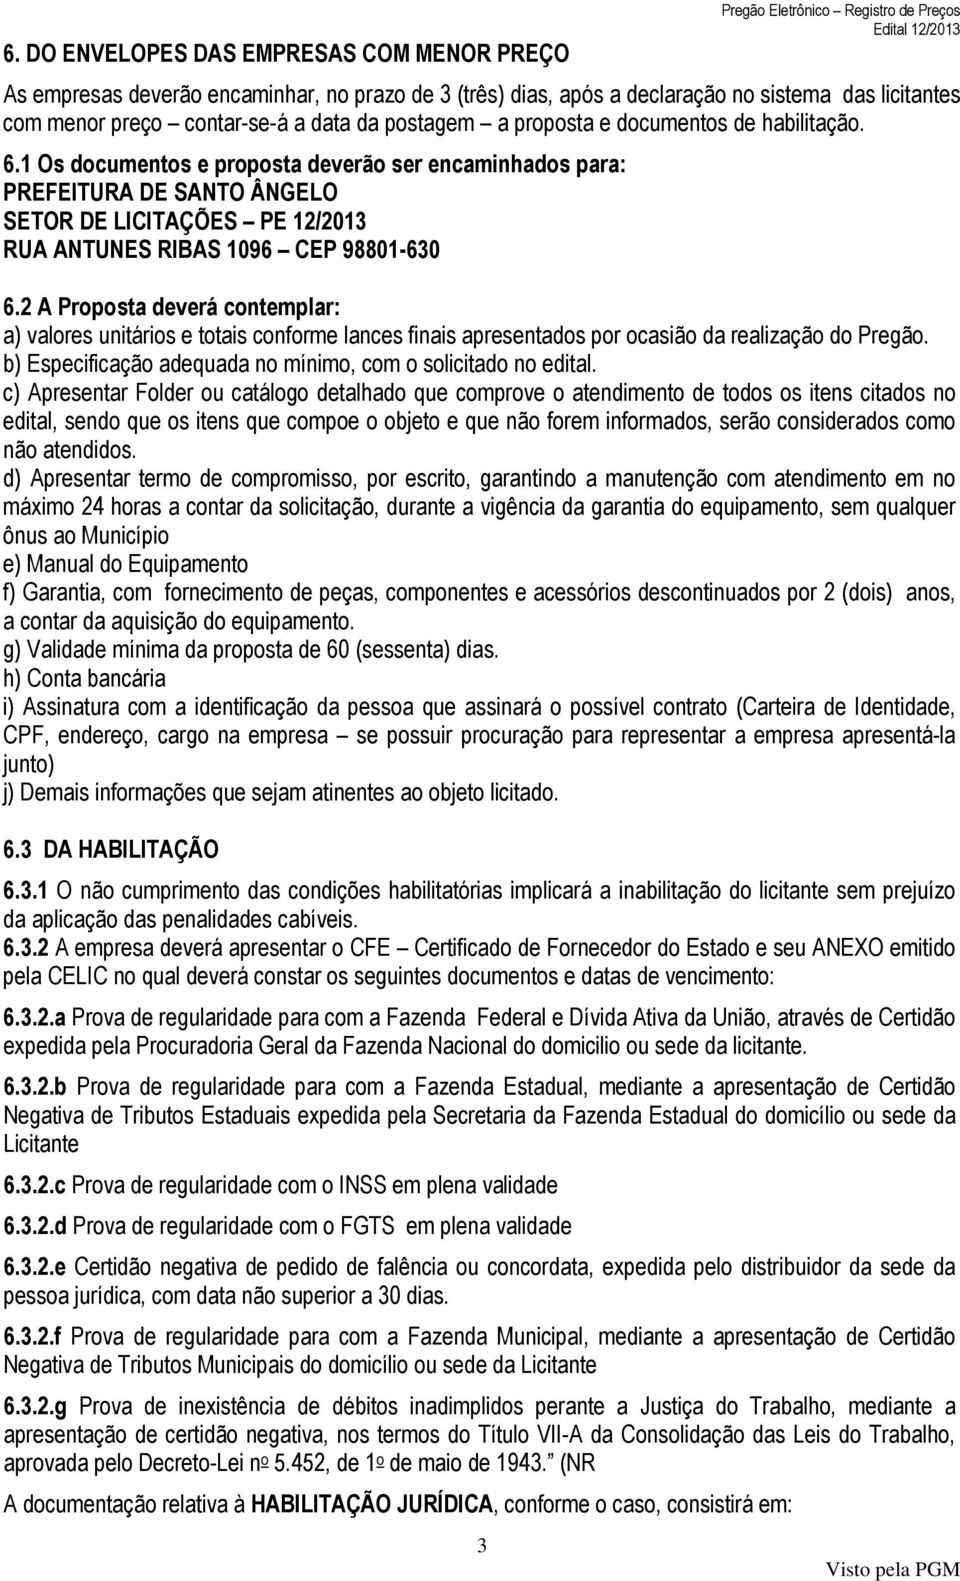 1 Os documentos e proposta deverão ser encaminhados para: PREFEITURA DE SANTO ÂNGELO SETOR DE LICITAÇÕES PE 12/2013 RUA ANTUNES RIBAS 1096 CEP 98801-630 6.